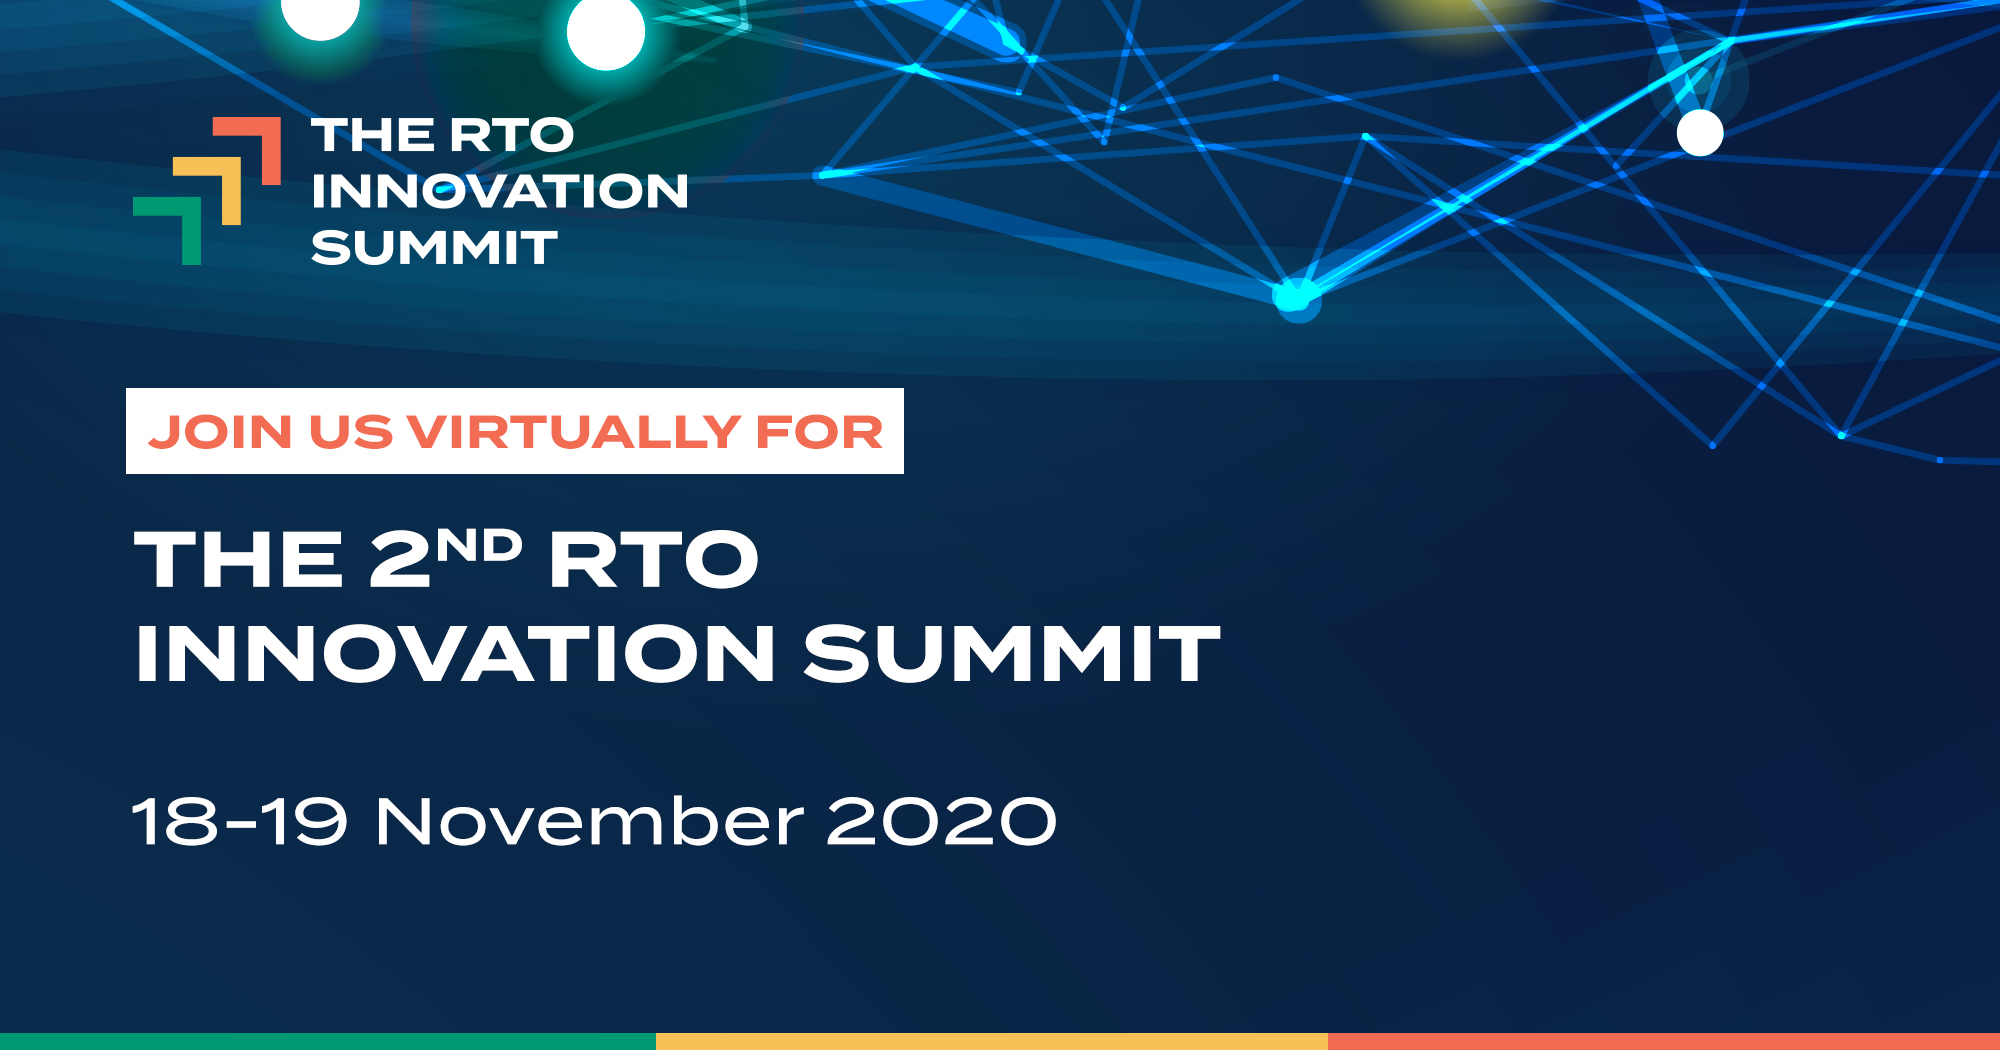 The RTO Innovation Summit 2020